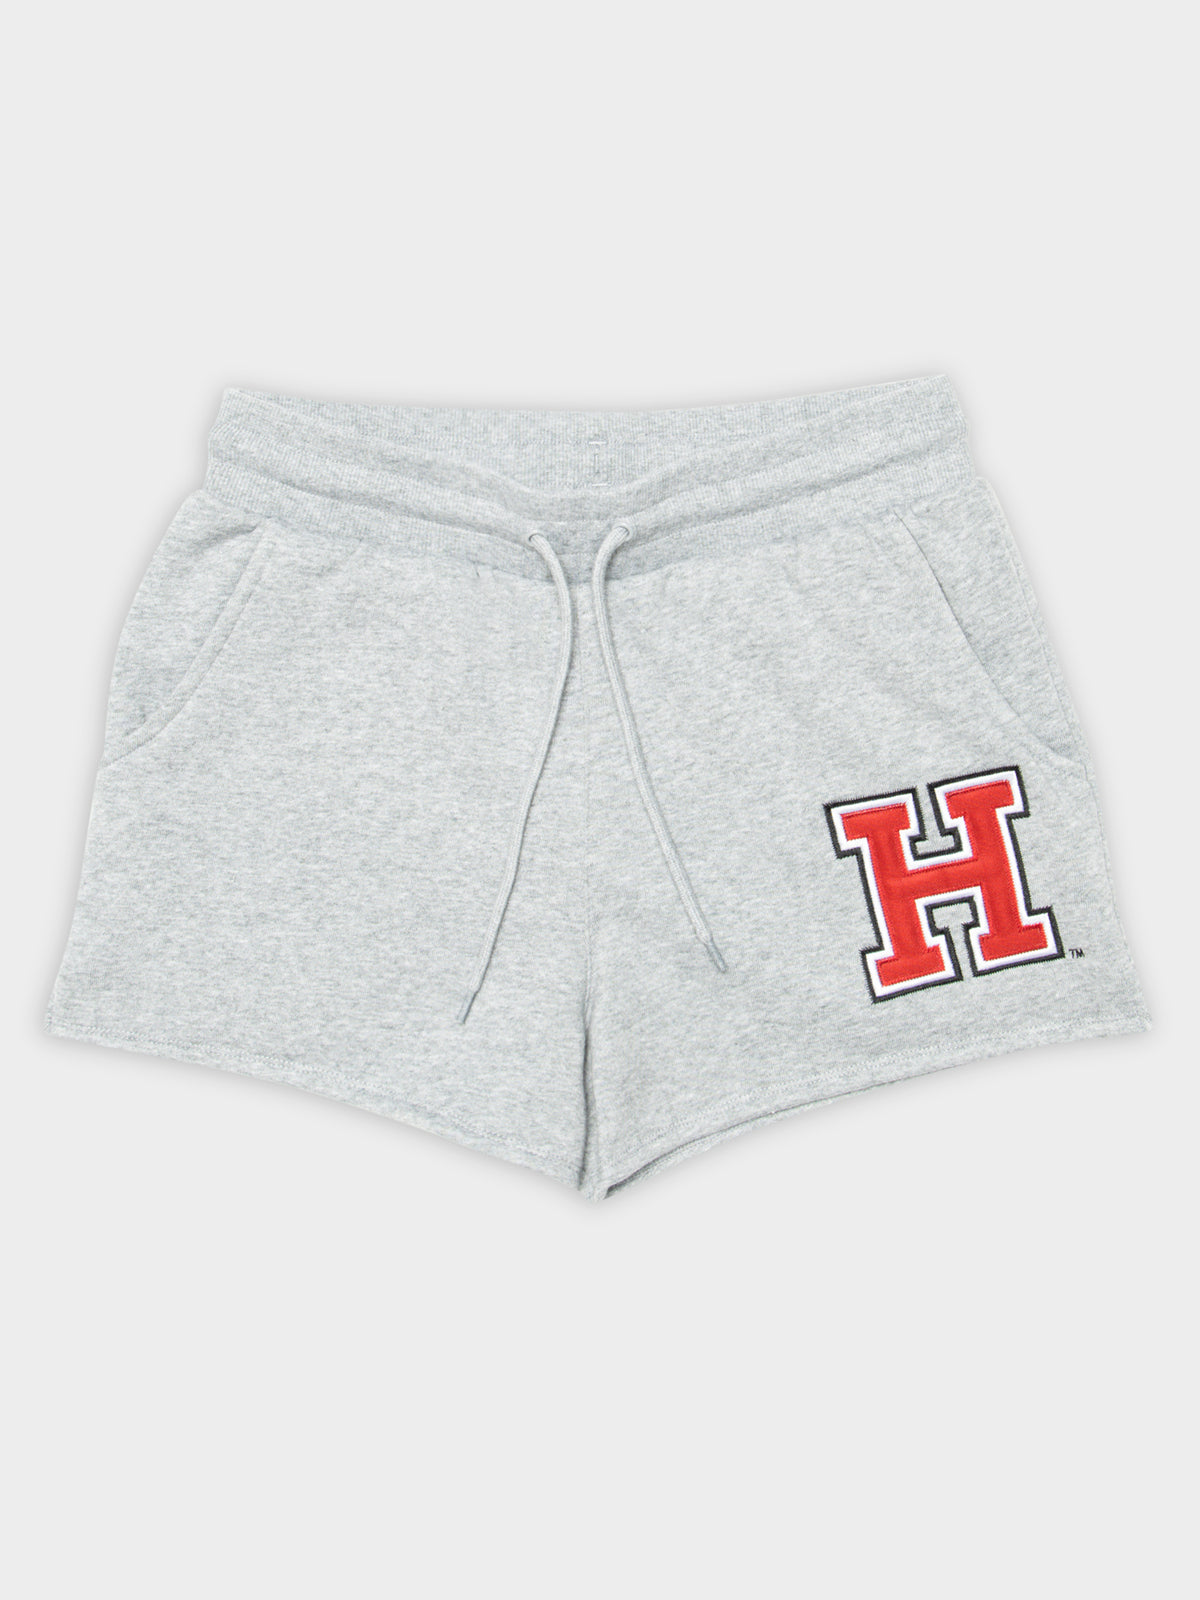 Harvard Cheer Fleece Shorts in Grey Marle